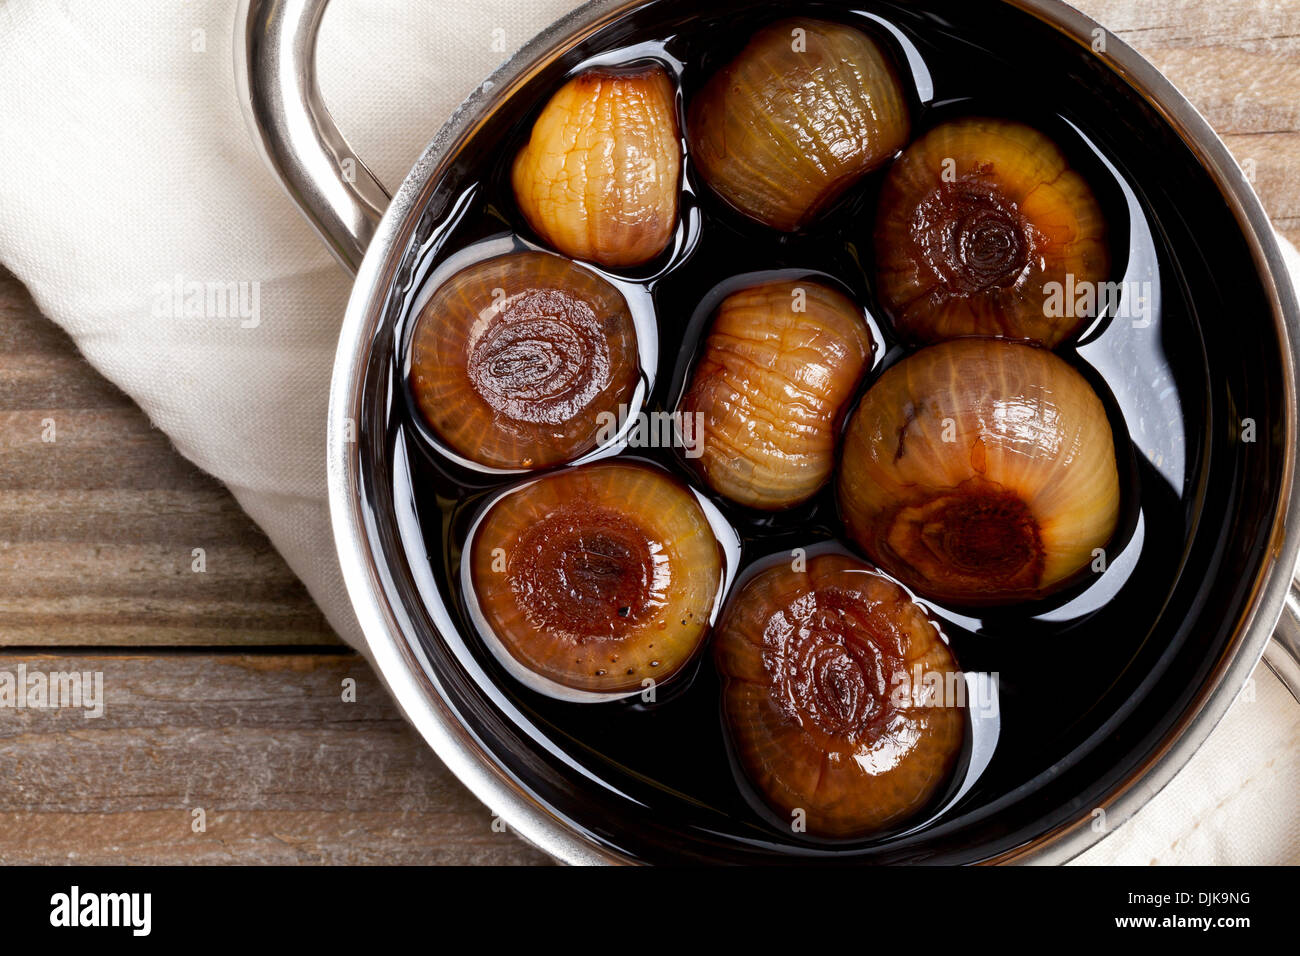 Pickling onions pickled in dark balsamic vinegar Stock Photo